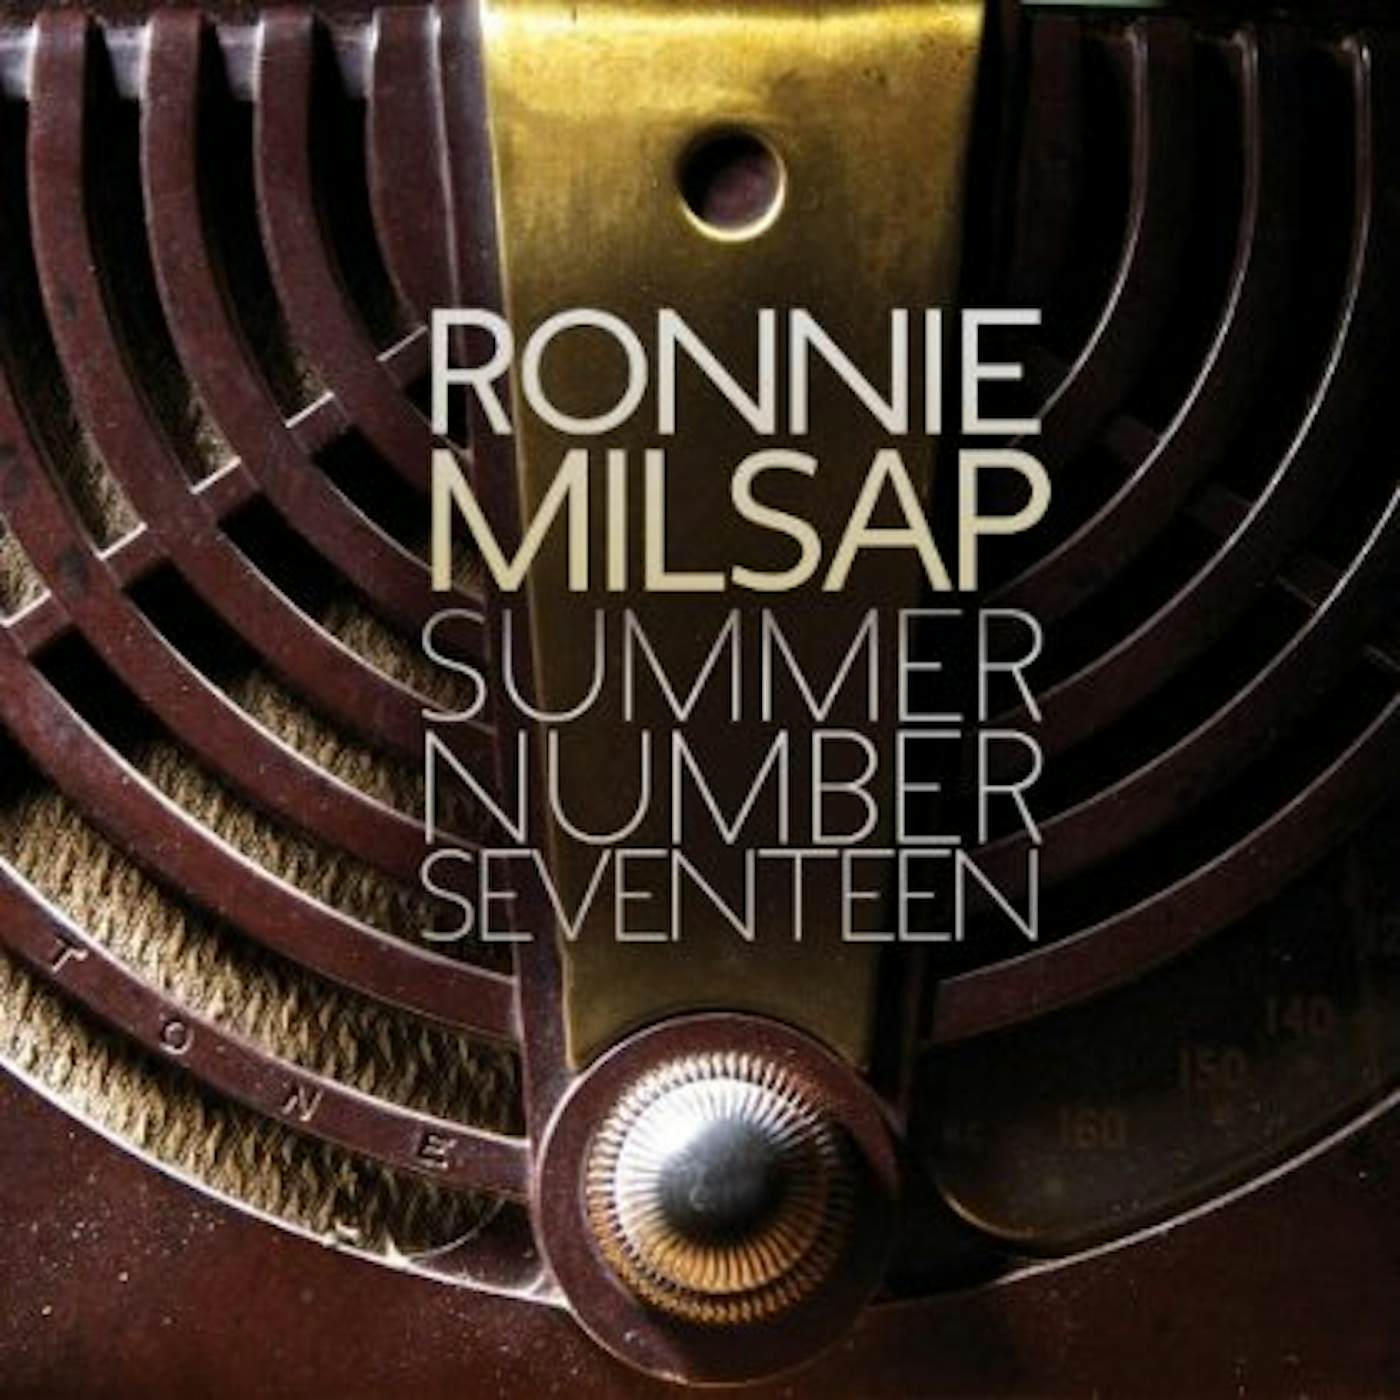 Ronnie Milsap SUMMER NUMBER SEVENTEEN CD